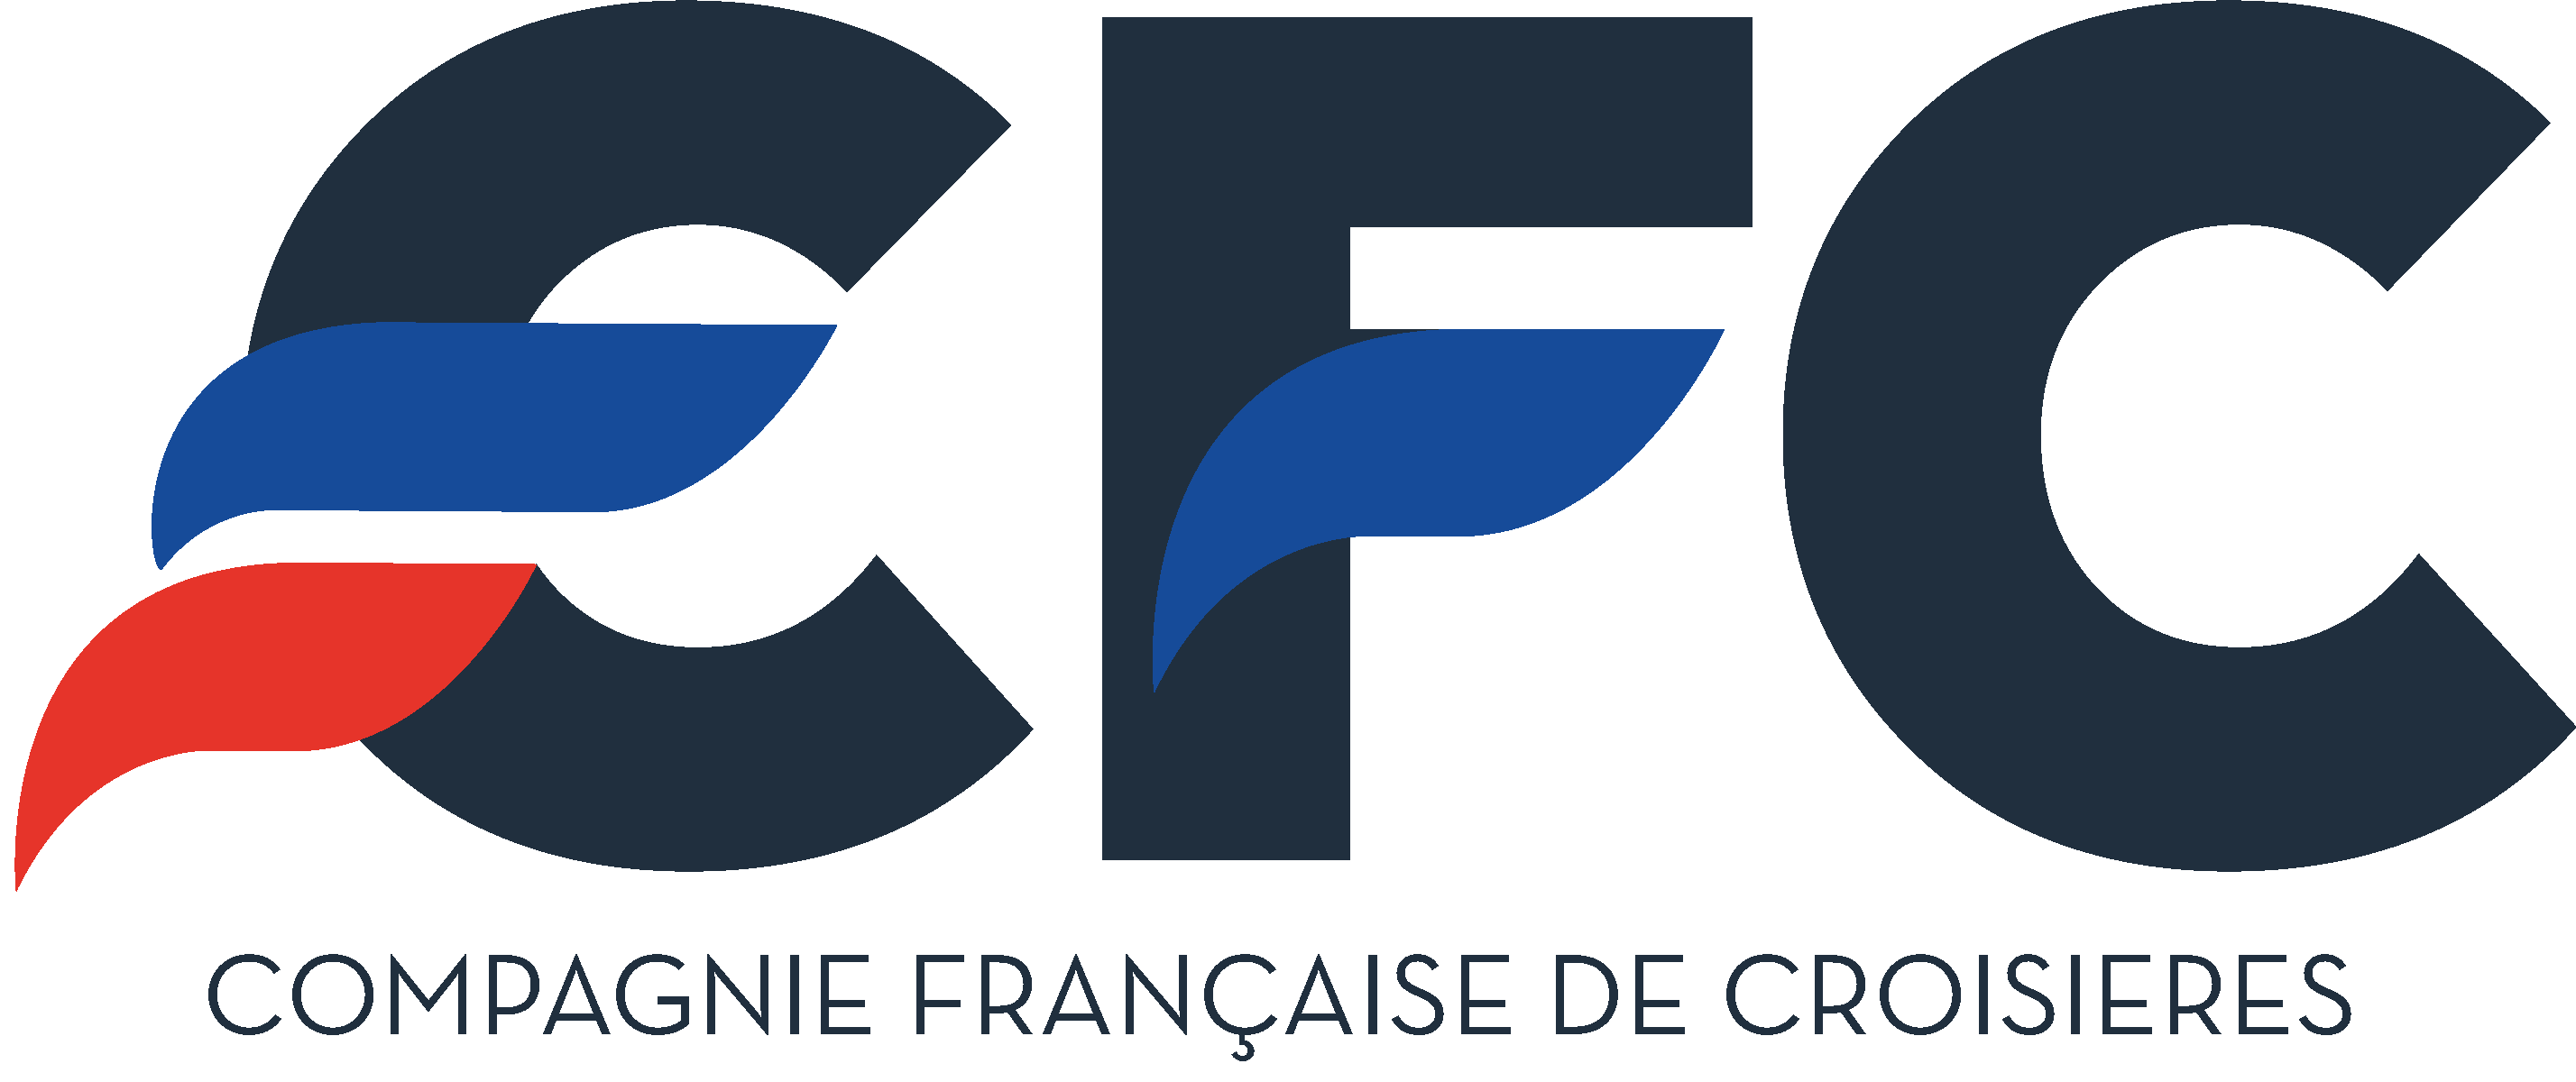 logo Croisières de France - Partenaires Voyages – TUI France